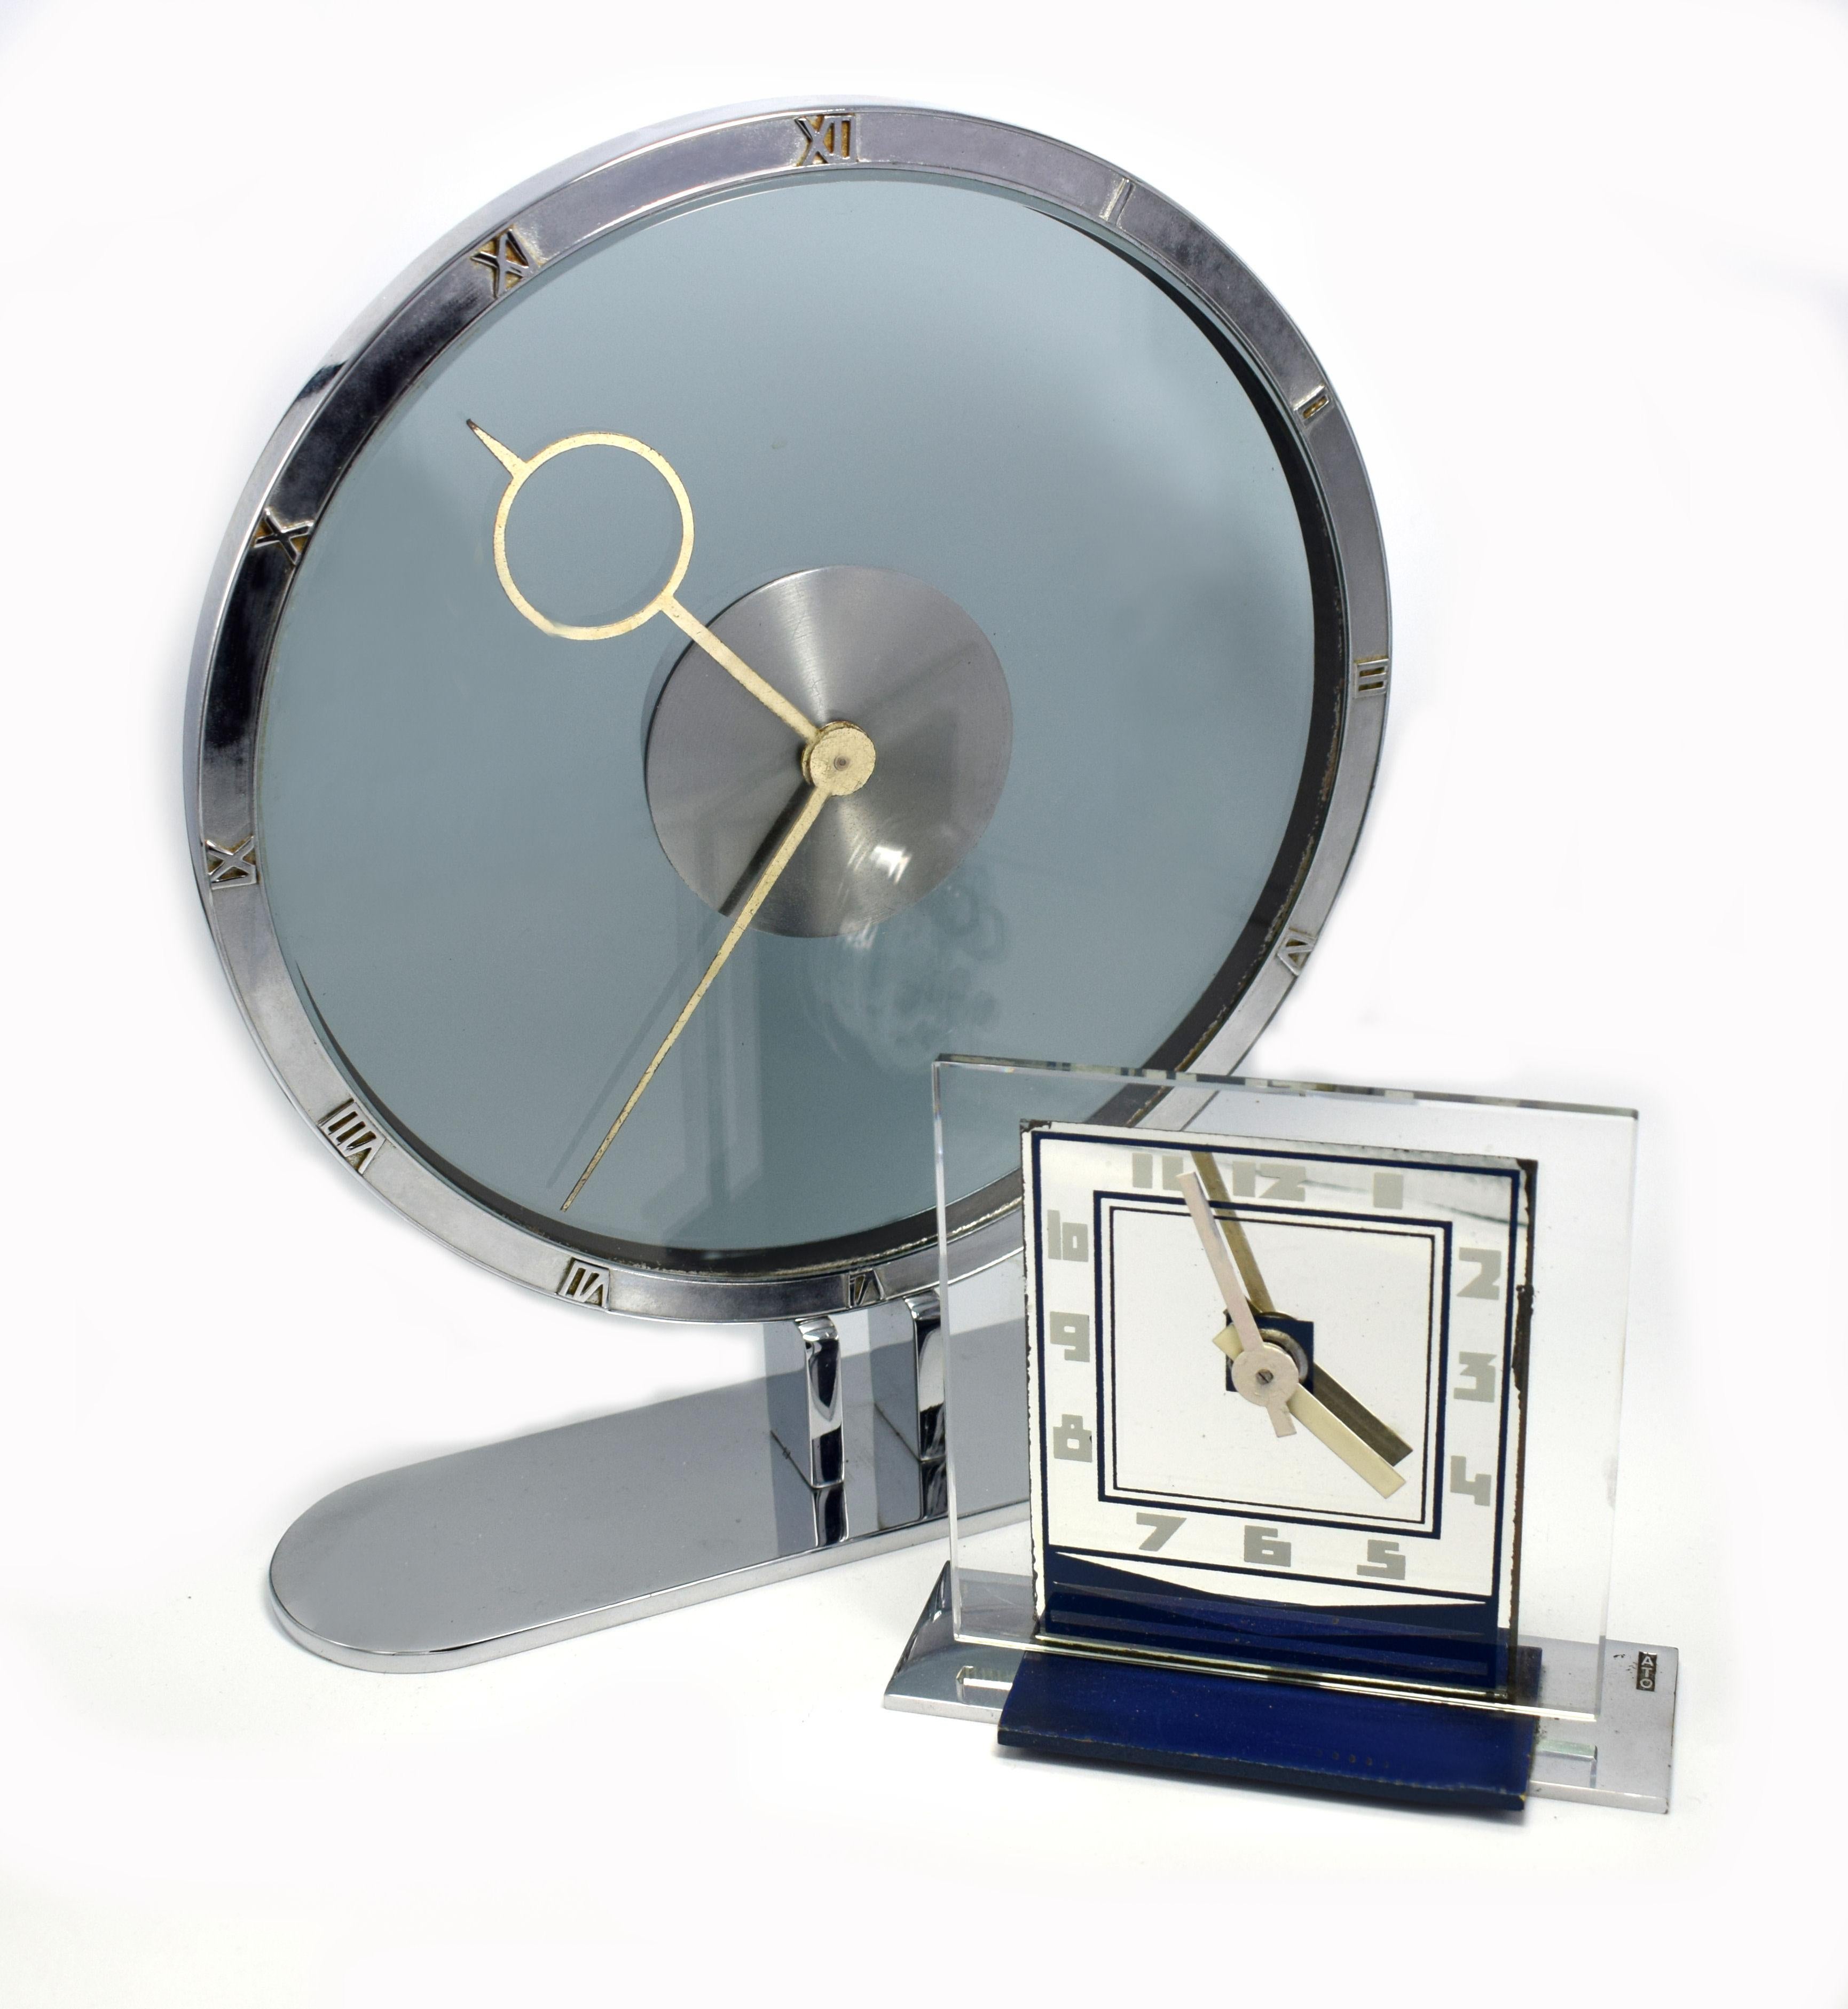 Rare 1930s Art Deco Modernist Alarm Clock by ATO 2